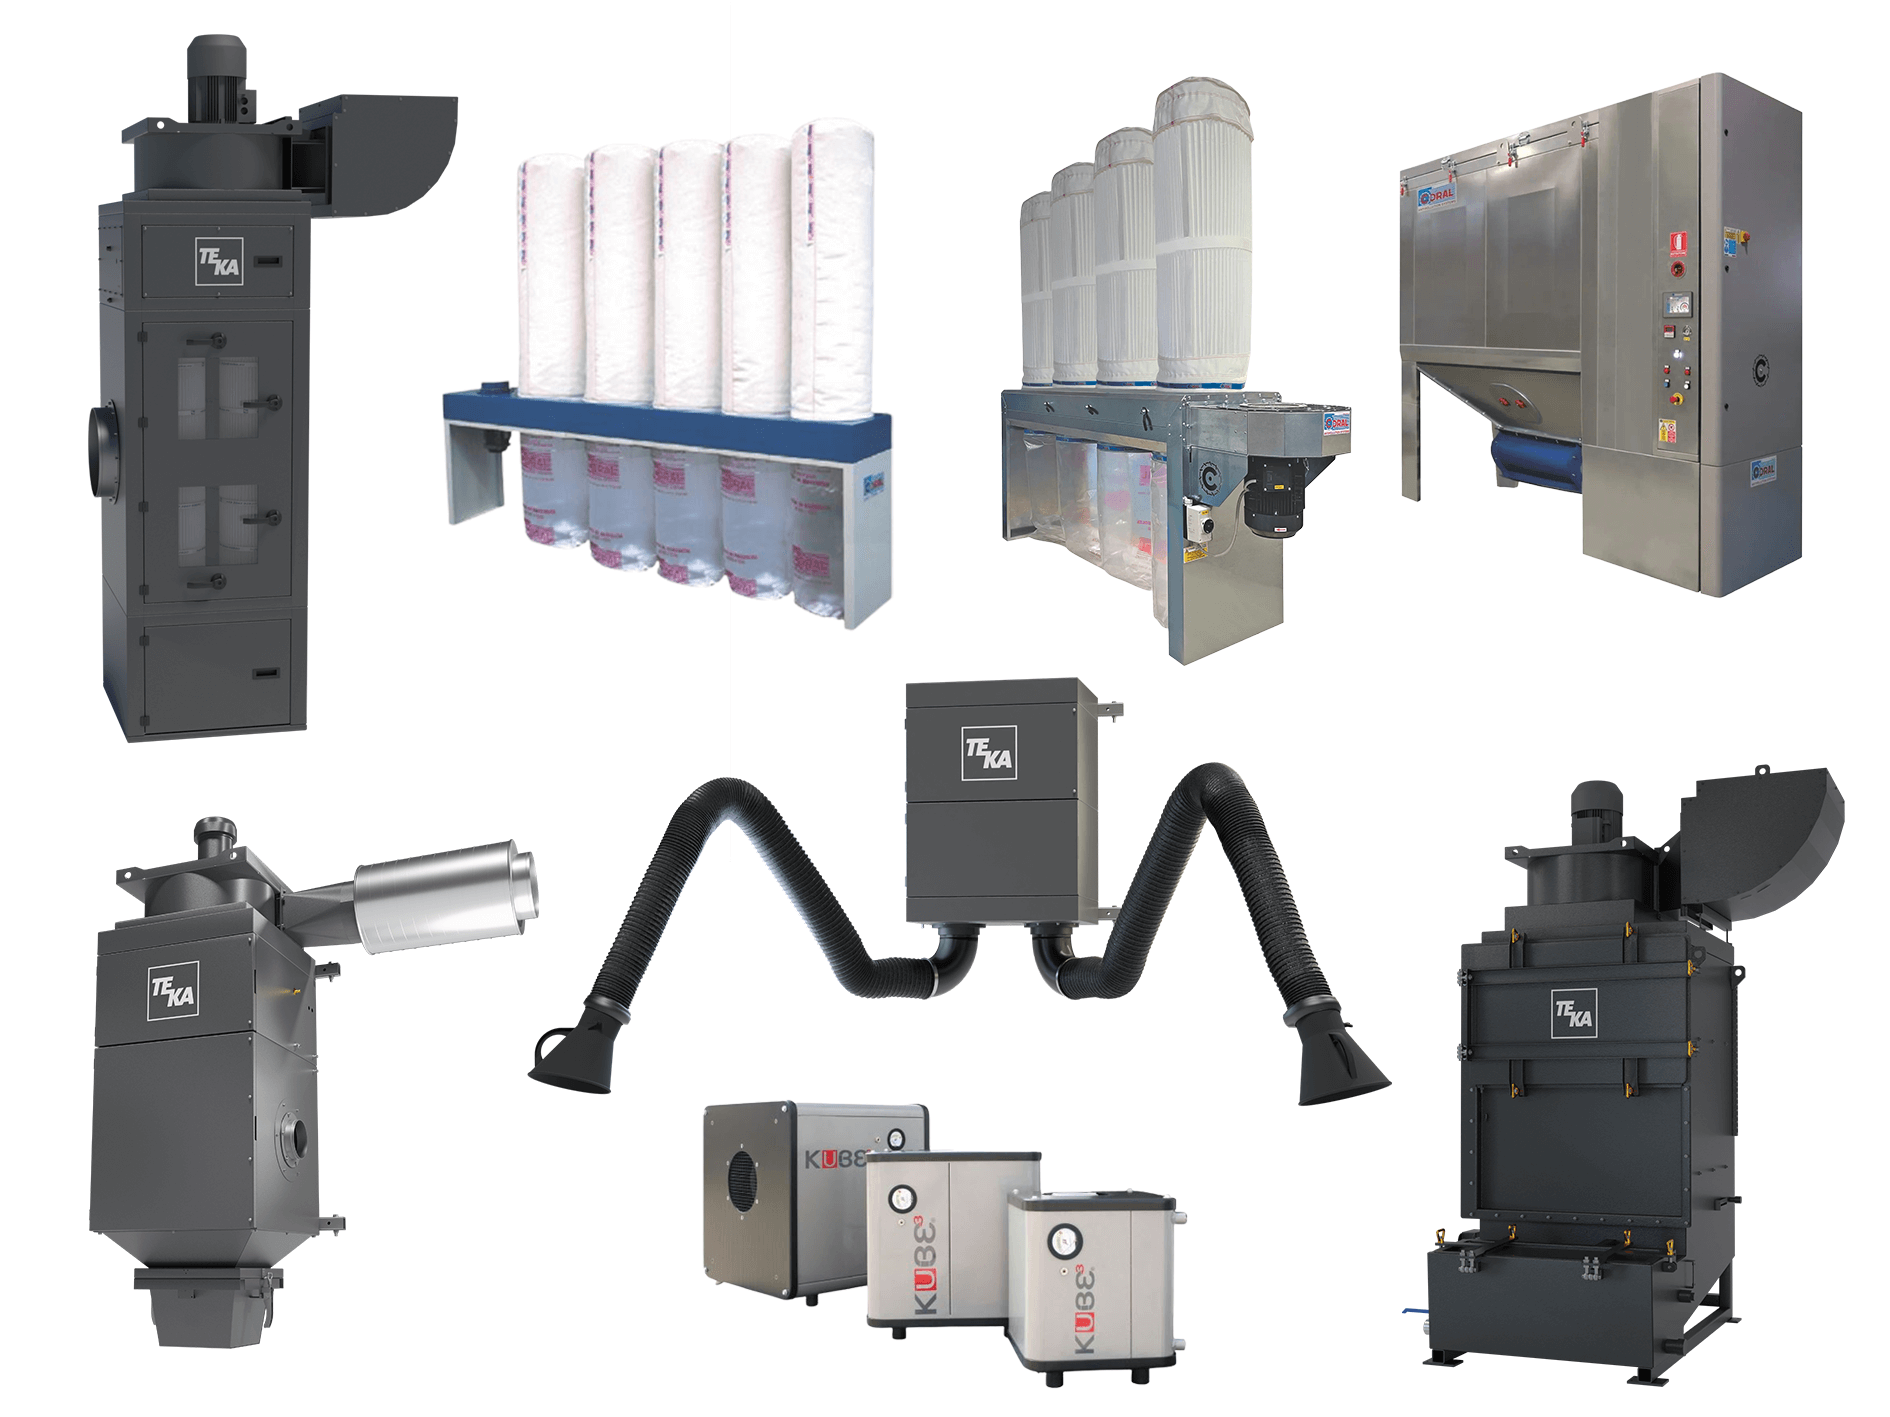 Auflistung von 8 stationären Filteranlagen, darunter Absackfilter, Patronenfilter, Nasswäscher, Schlauchfilter